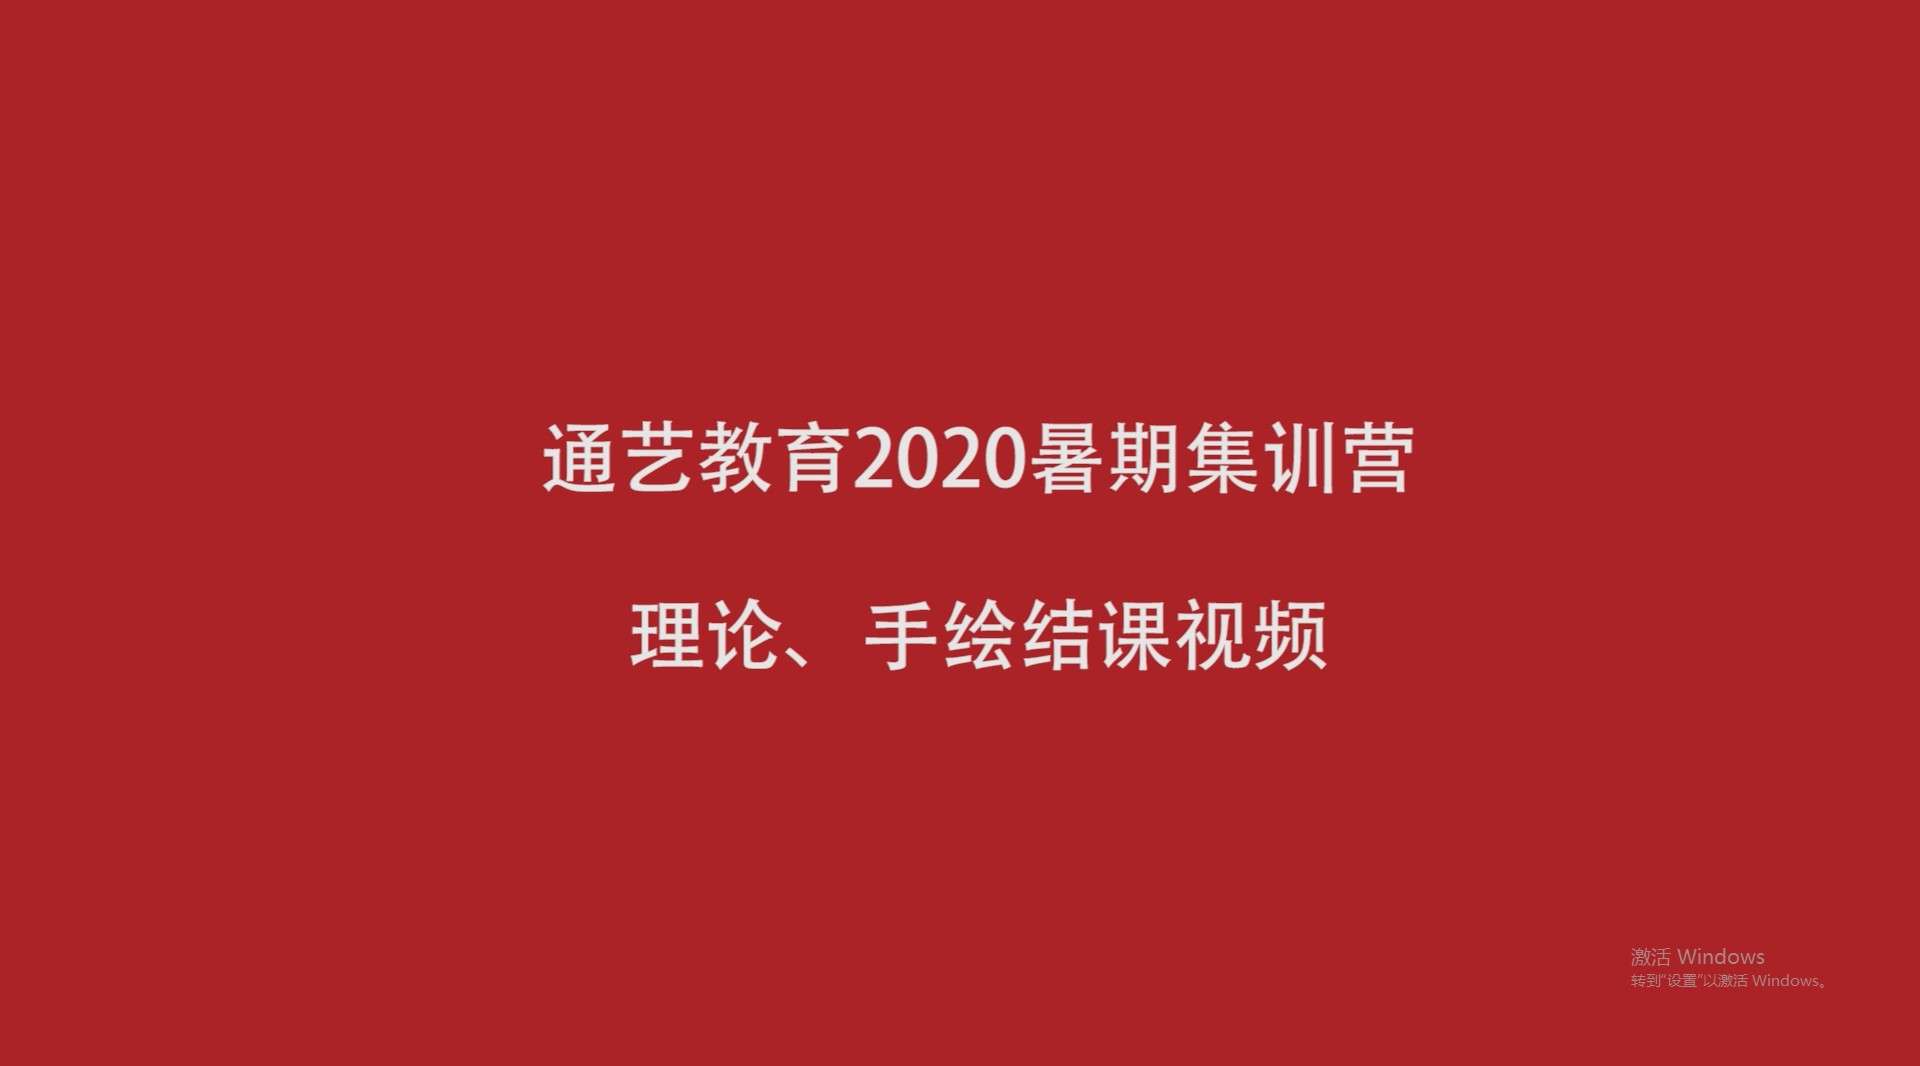 通艺教育2020年暑期结课集锦视频